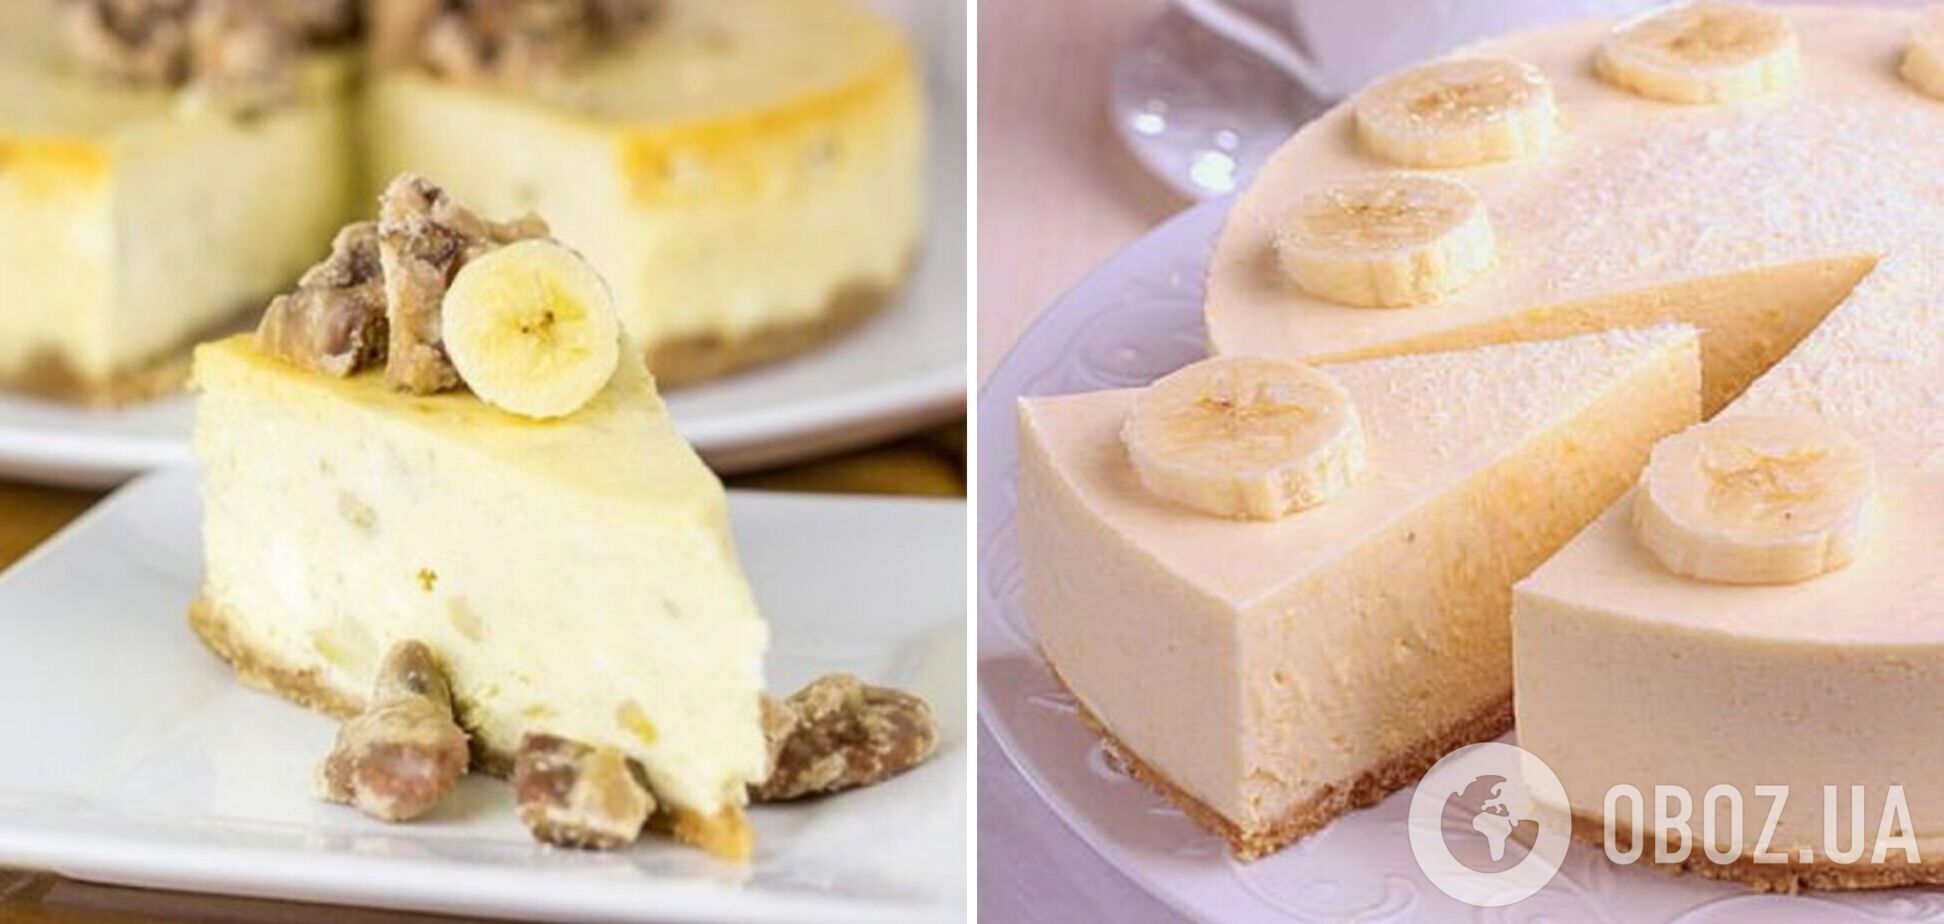 Низкокалорийный банановый чизкейк: чем заменить привычные ингредиенты